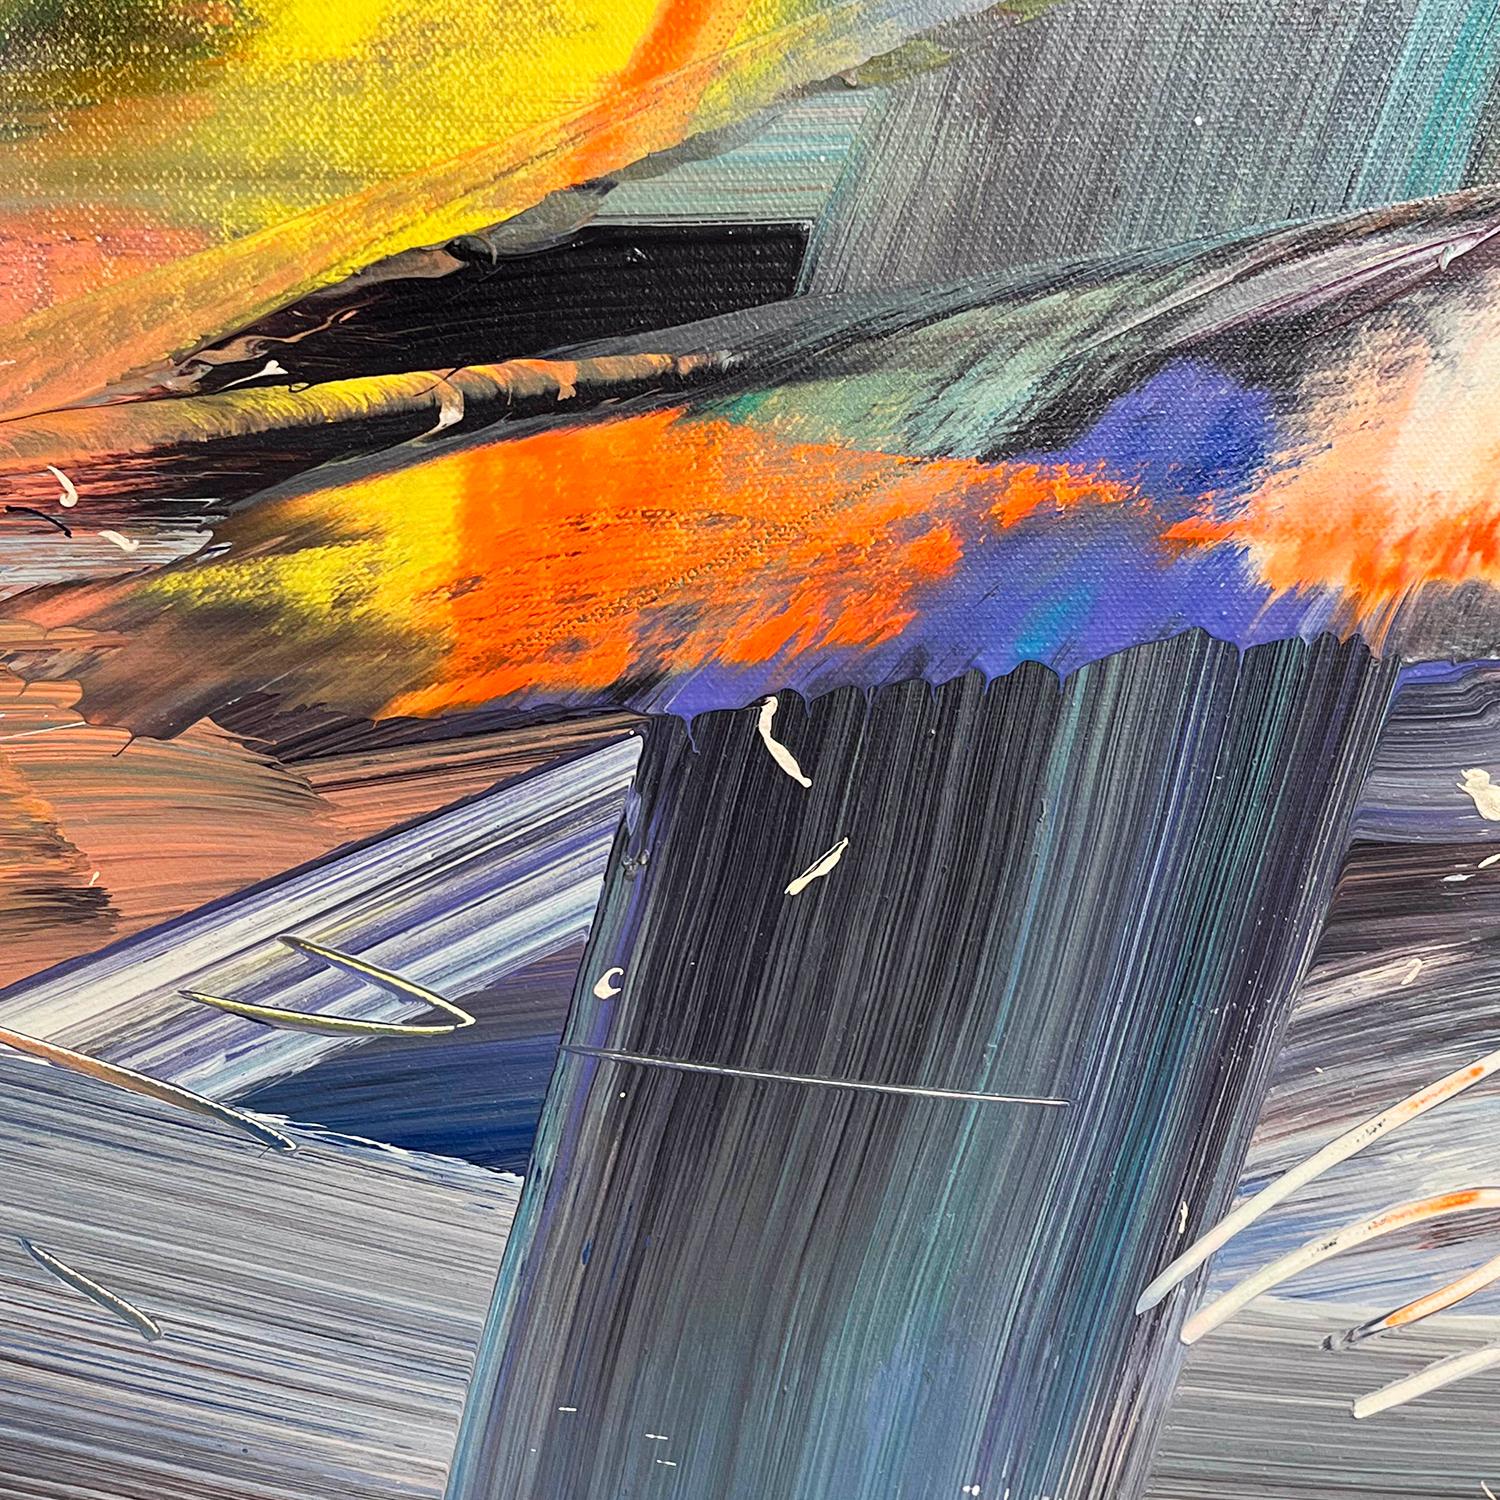 Les œuvres abstraites imaginaires multicouches de Joel Masewich représentent sa réponse émotionnelle aux paysages. Nombre de ses œuvres contiennent des références visuelles à l'eau ou à la lumière. Les teintes vives sont fortement contrastées, comme